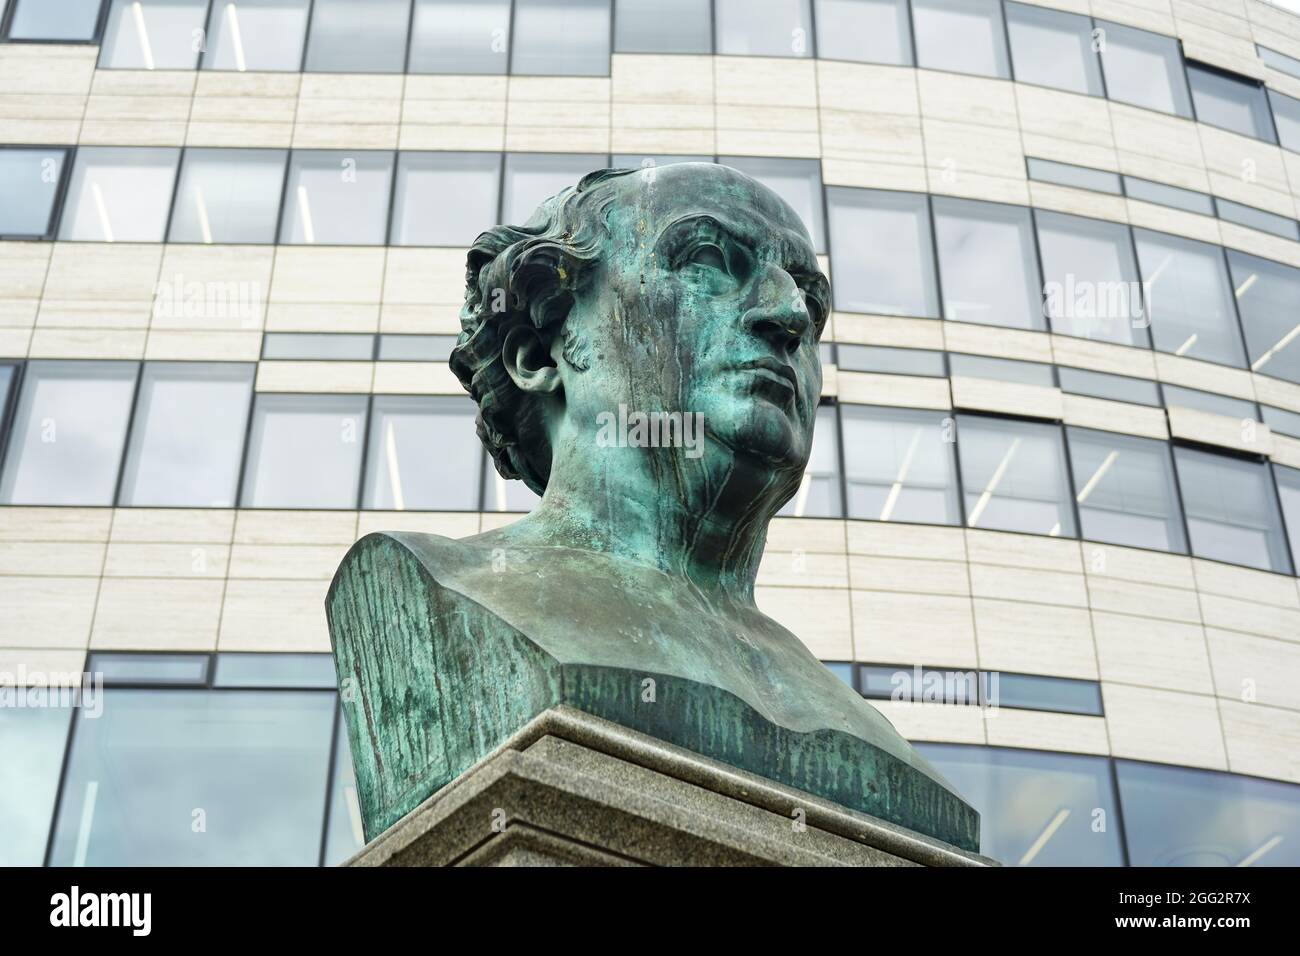 Buste en bronze historique de Friedrich Wilhelm von Schadow, dévoilé en 1869, devant un immeuble de bureaux moderne à la maison de Cologne, en Allemagne. Banque D'Images